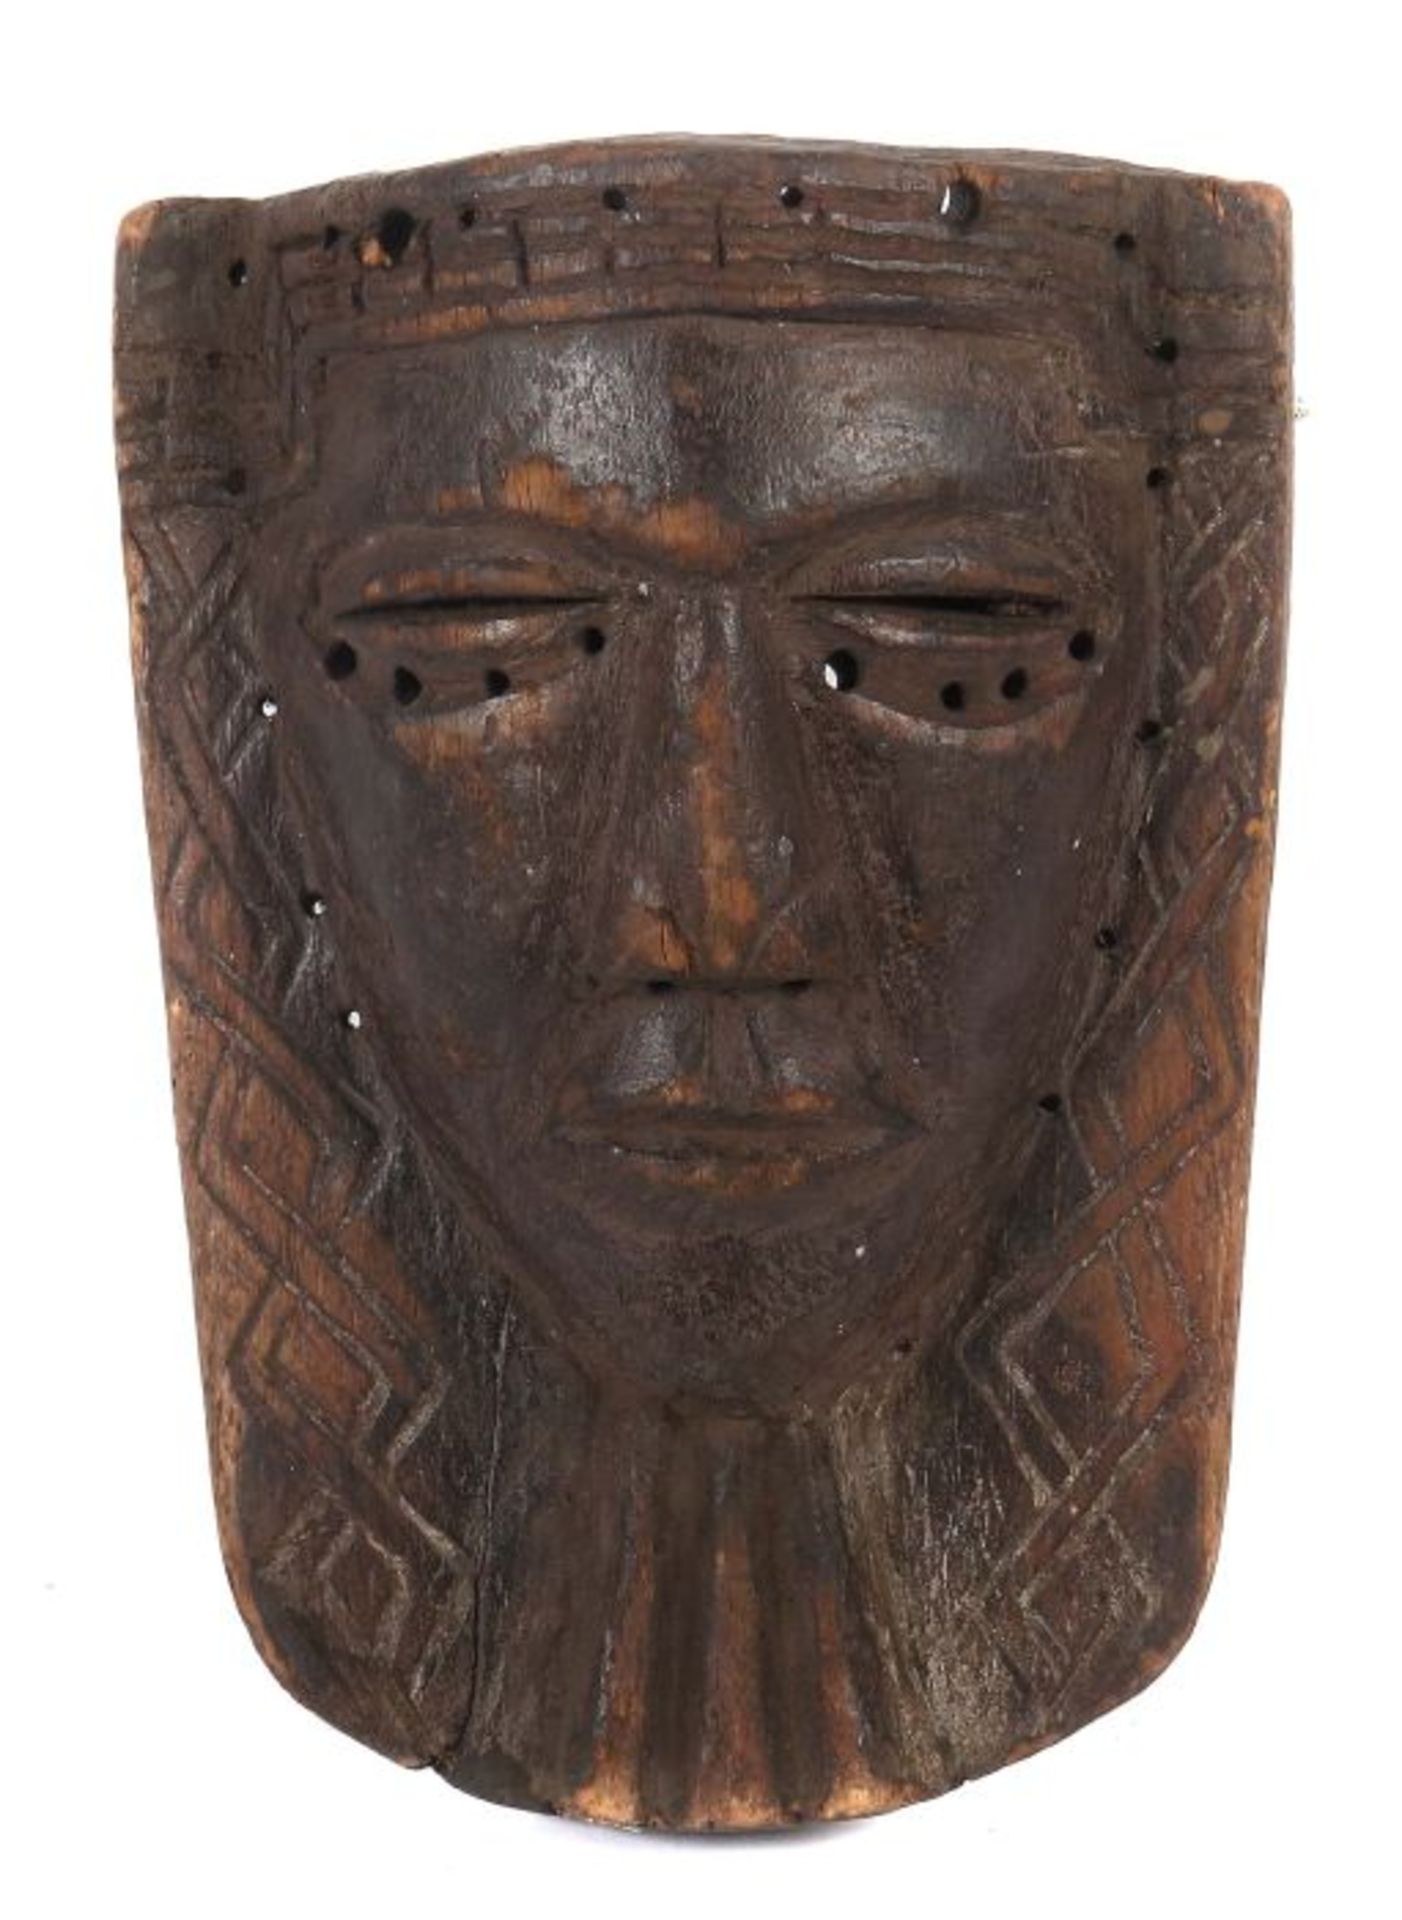 Brettmaskewohl Stamm der Kuba, Holz, mit flechtbandkonturiertem Gesicht, H: 28 cm.- - -25.00 %